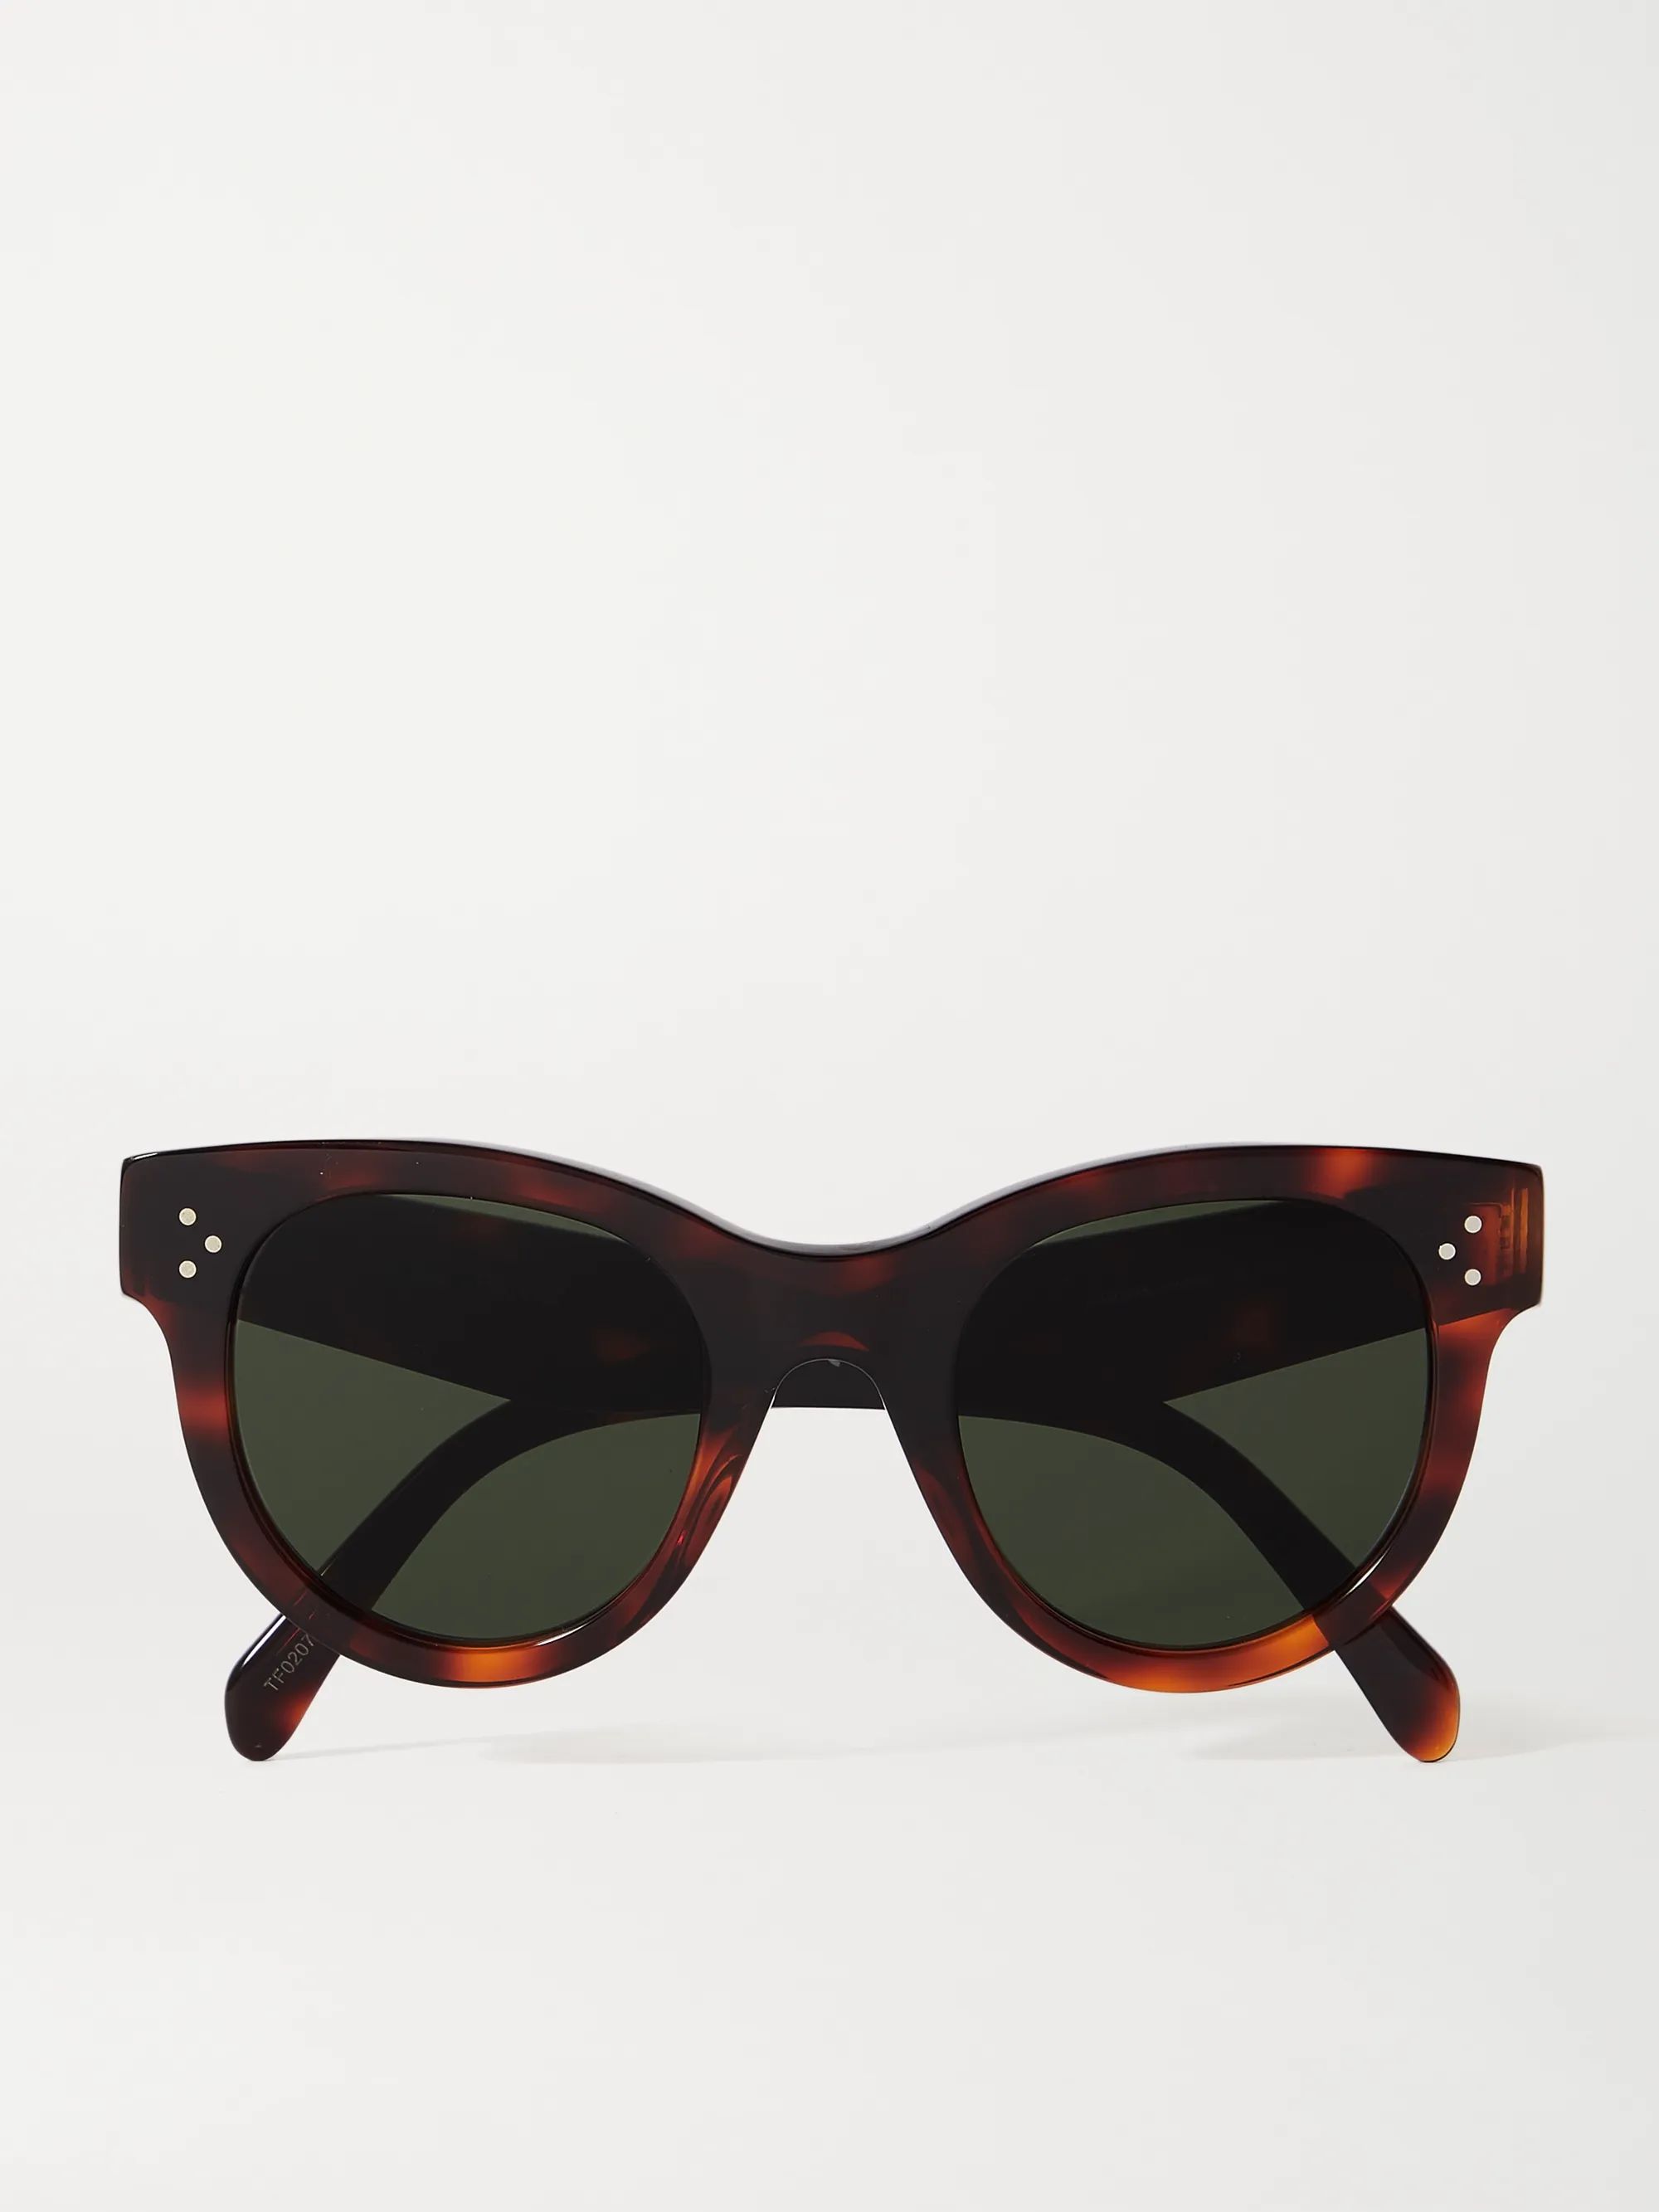 Tortoiseshell Round-frame tortoiseshell acetate sunglasses | Celine | NET-A-PORTER | NET-A-PORTER (US)